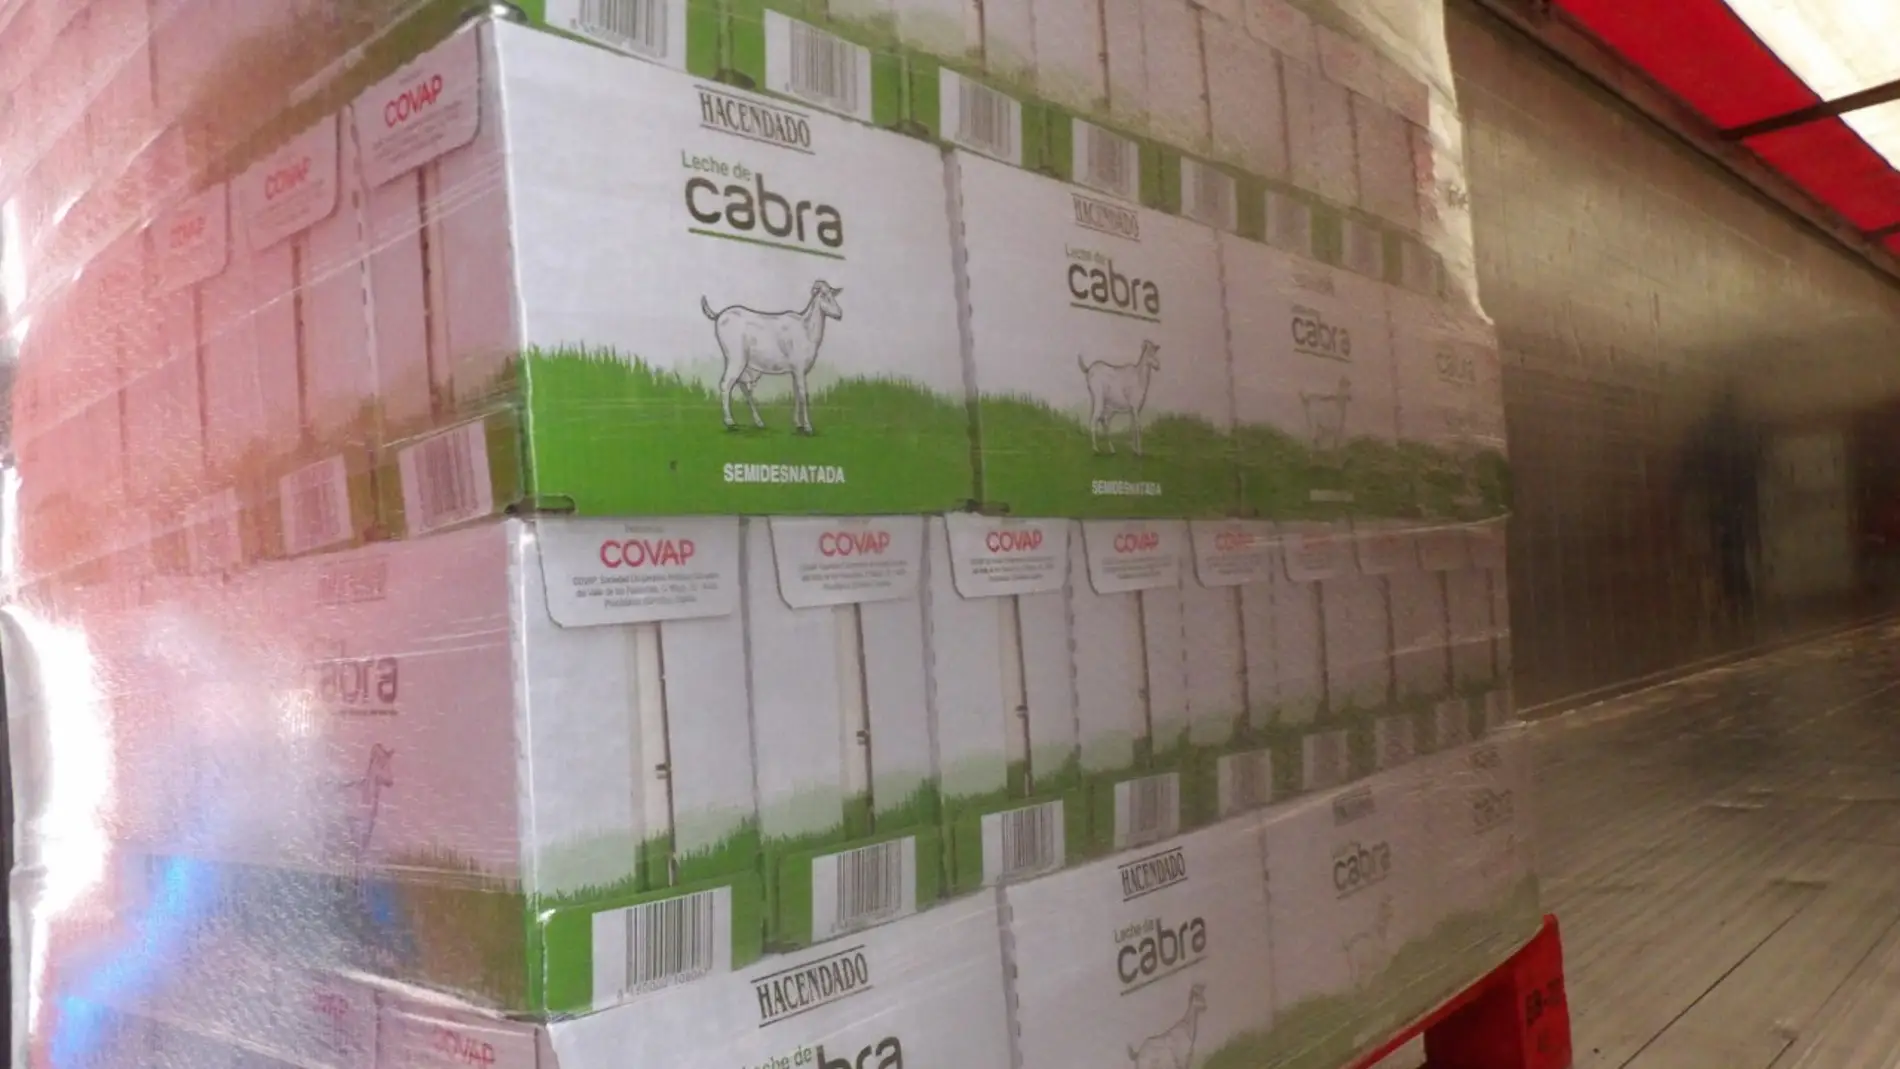 Covap dona más de 32.000 litros de leche al Banco de Alimentos